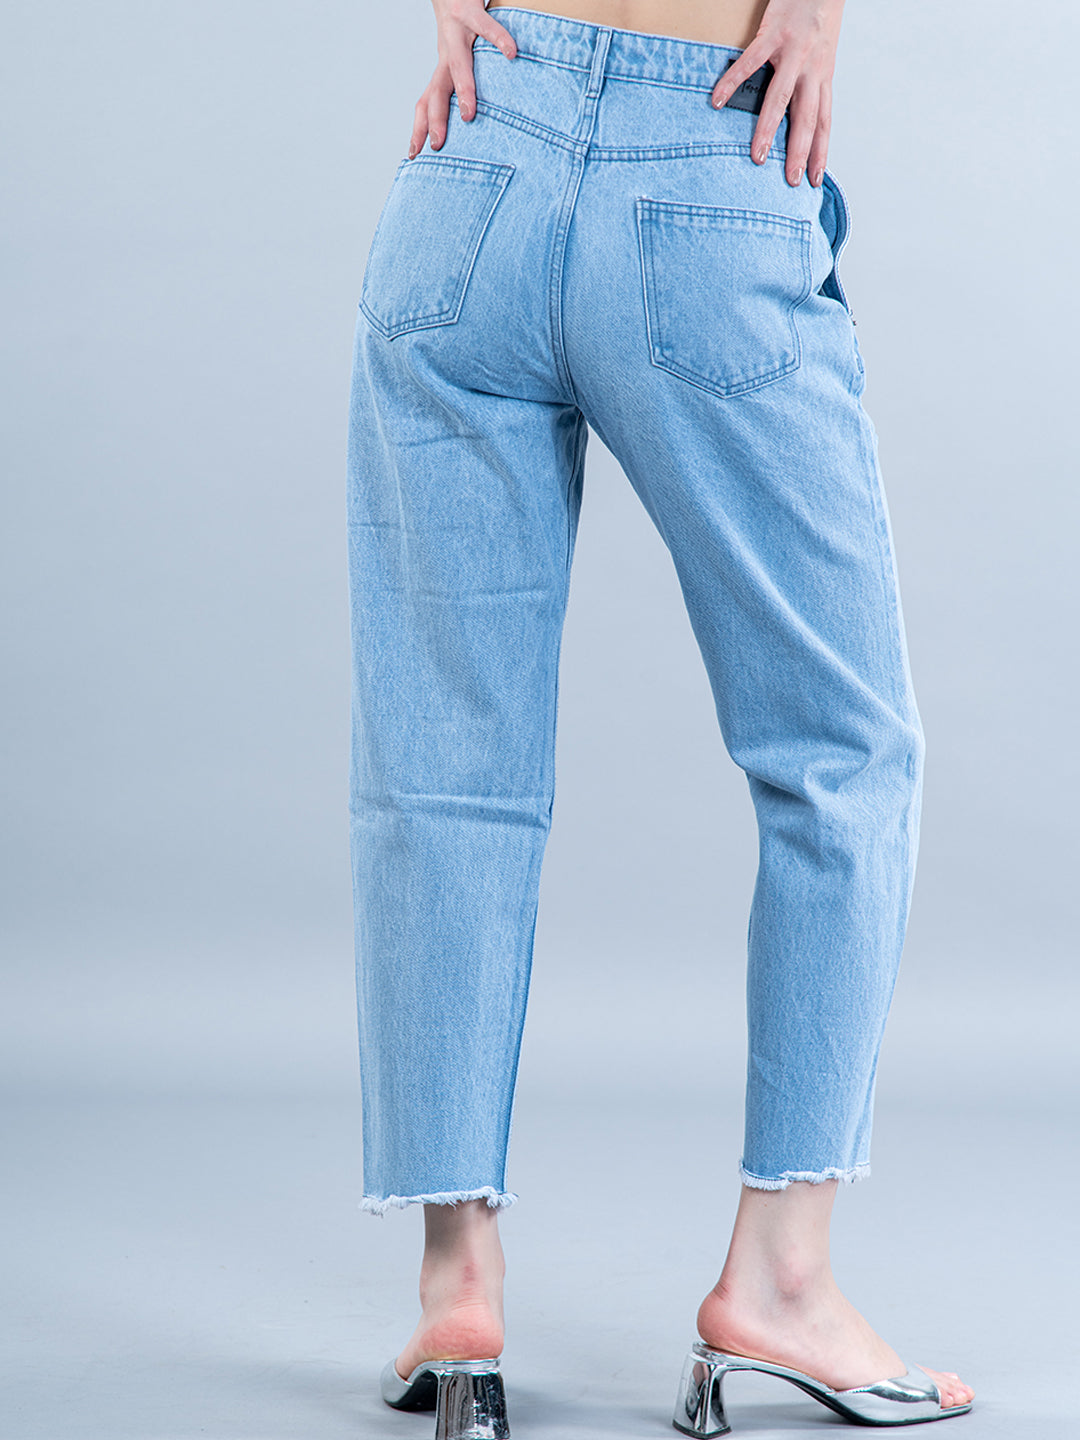 Casual High Waist Loose Women Denim Jeans Woman Streetwear Vintage Long  Wide Leg Jeans Pants Female Trousers Capris - Jeans - AliExpress